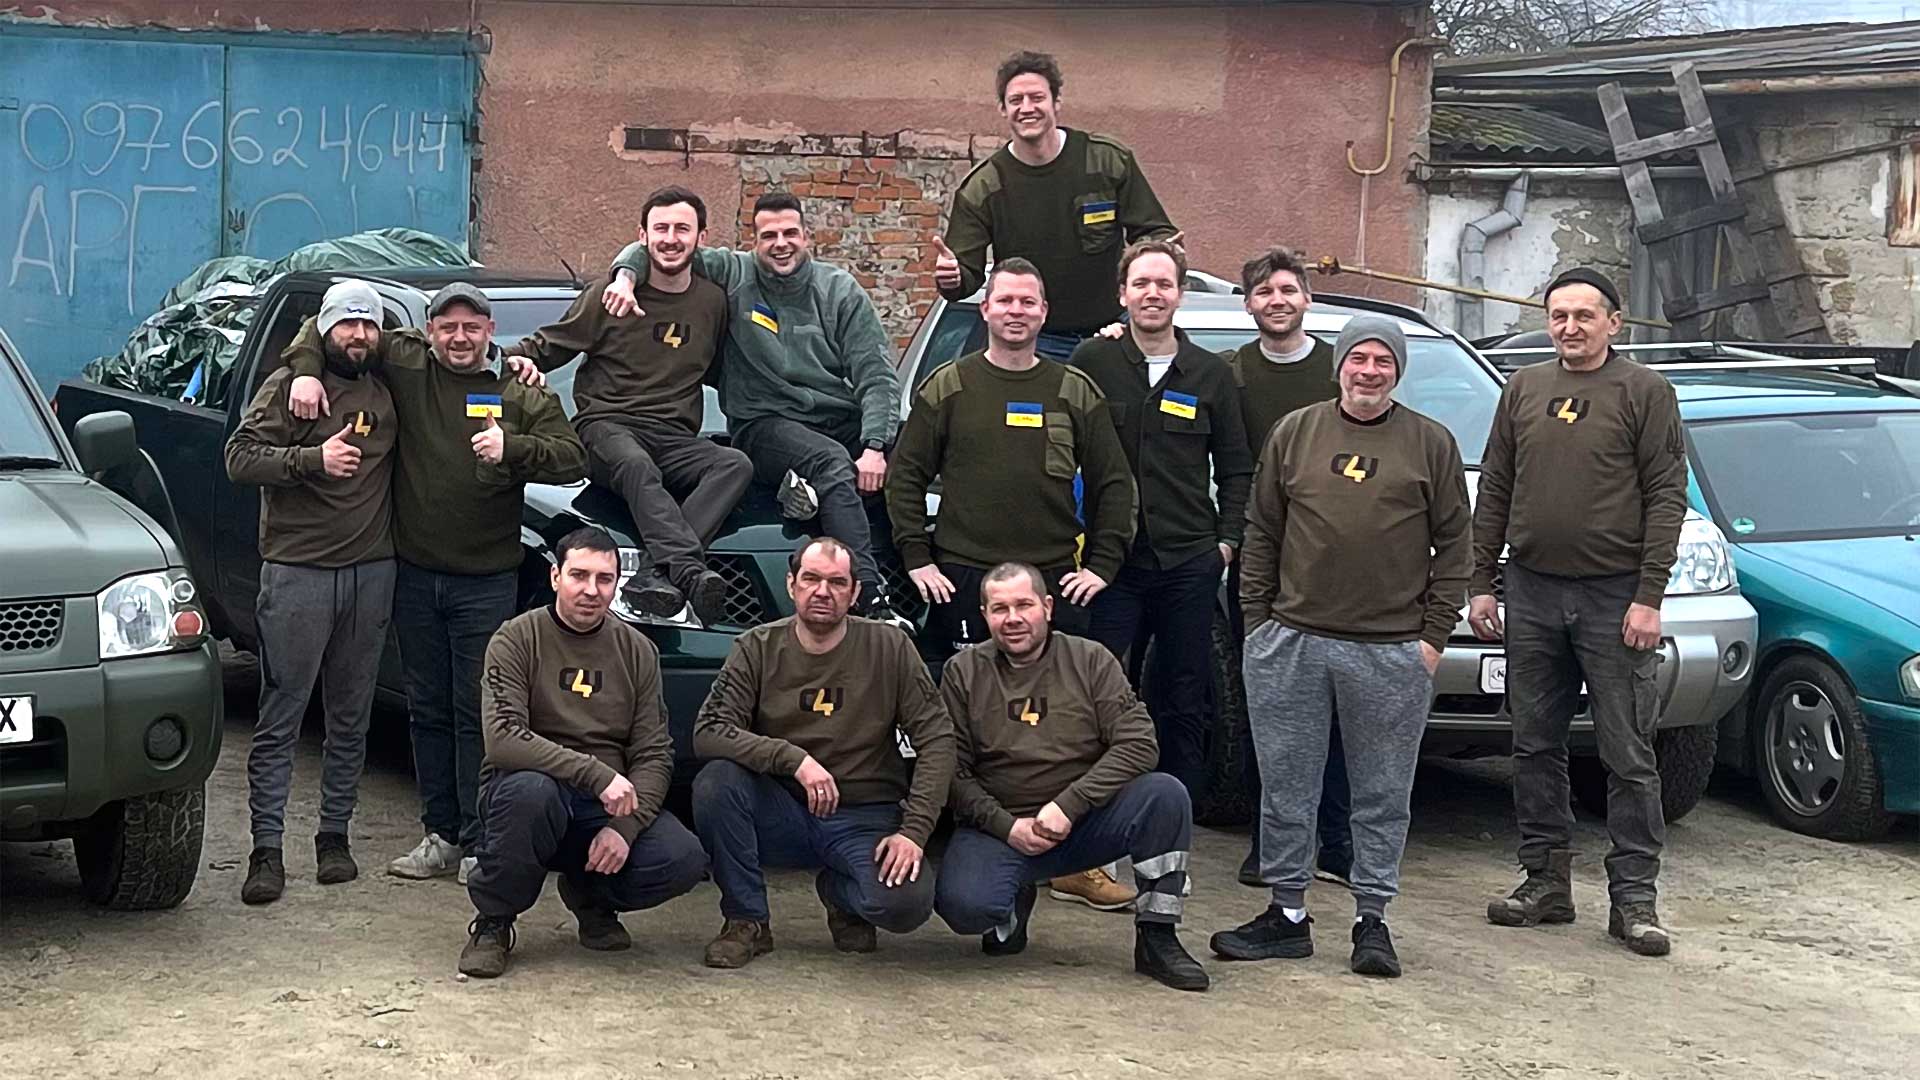 Groepsfoto van het Auto voor Oekraïne-team met buitenlandse vrijwilligers